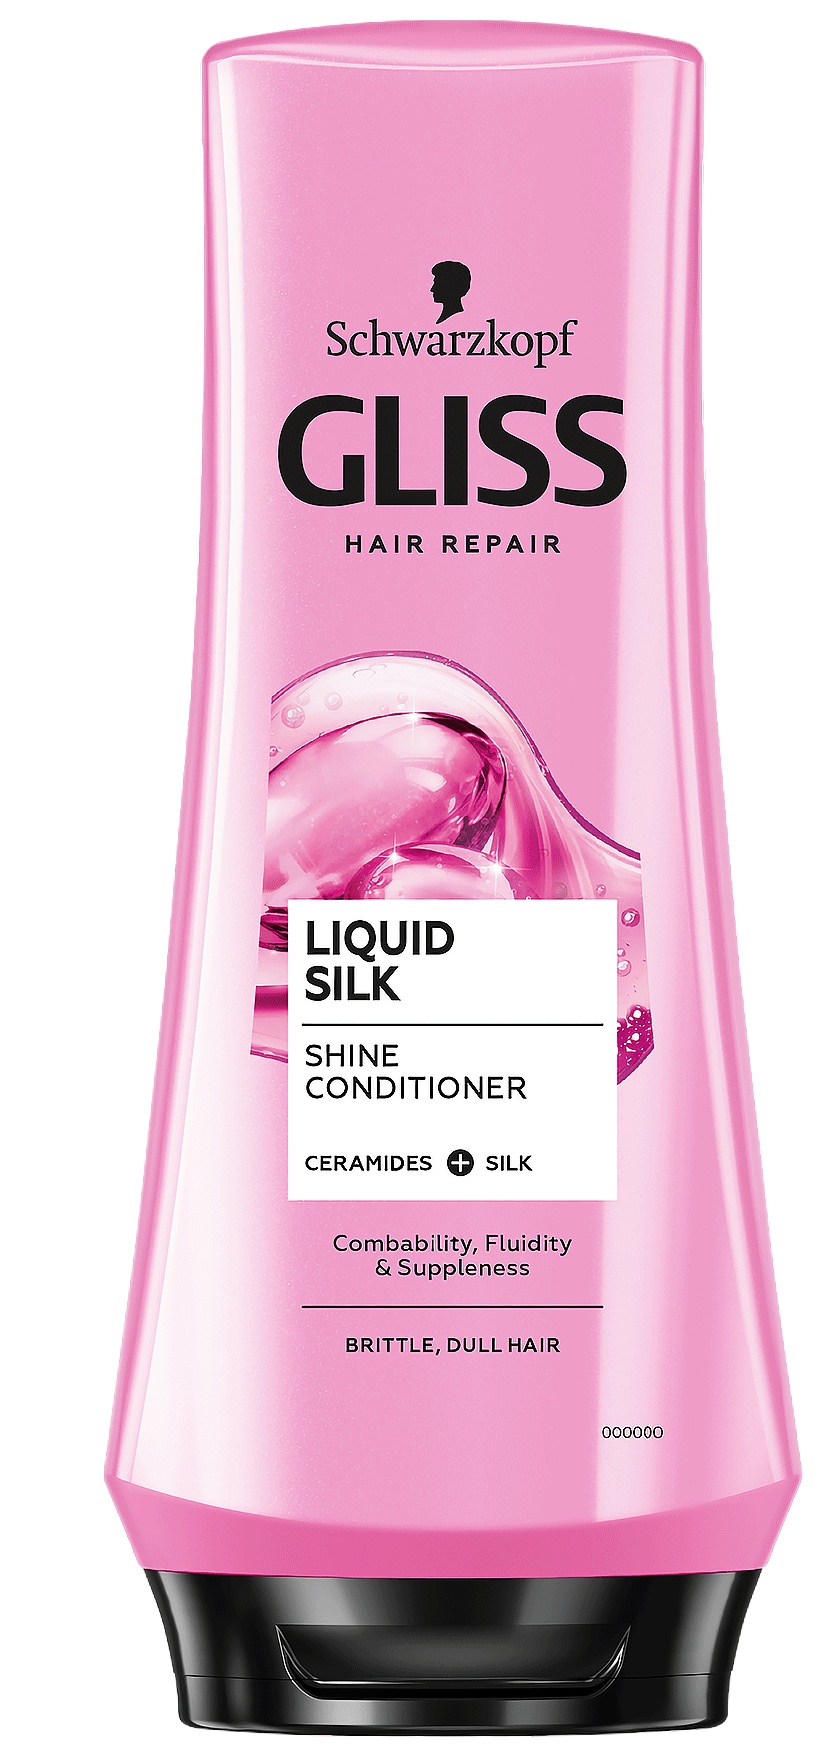 Schwarzkopf Gliss Hair Repair Liquid Silk Shine Conditioner